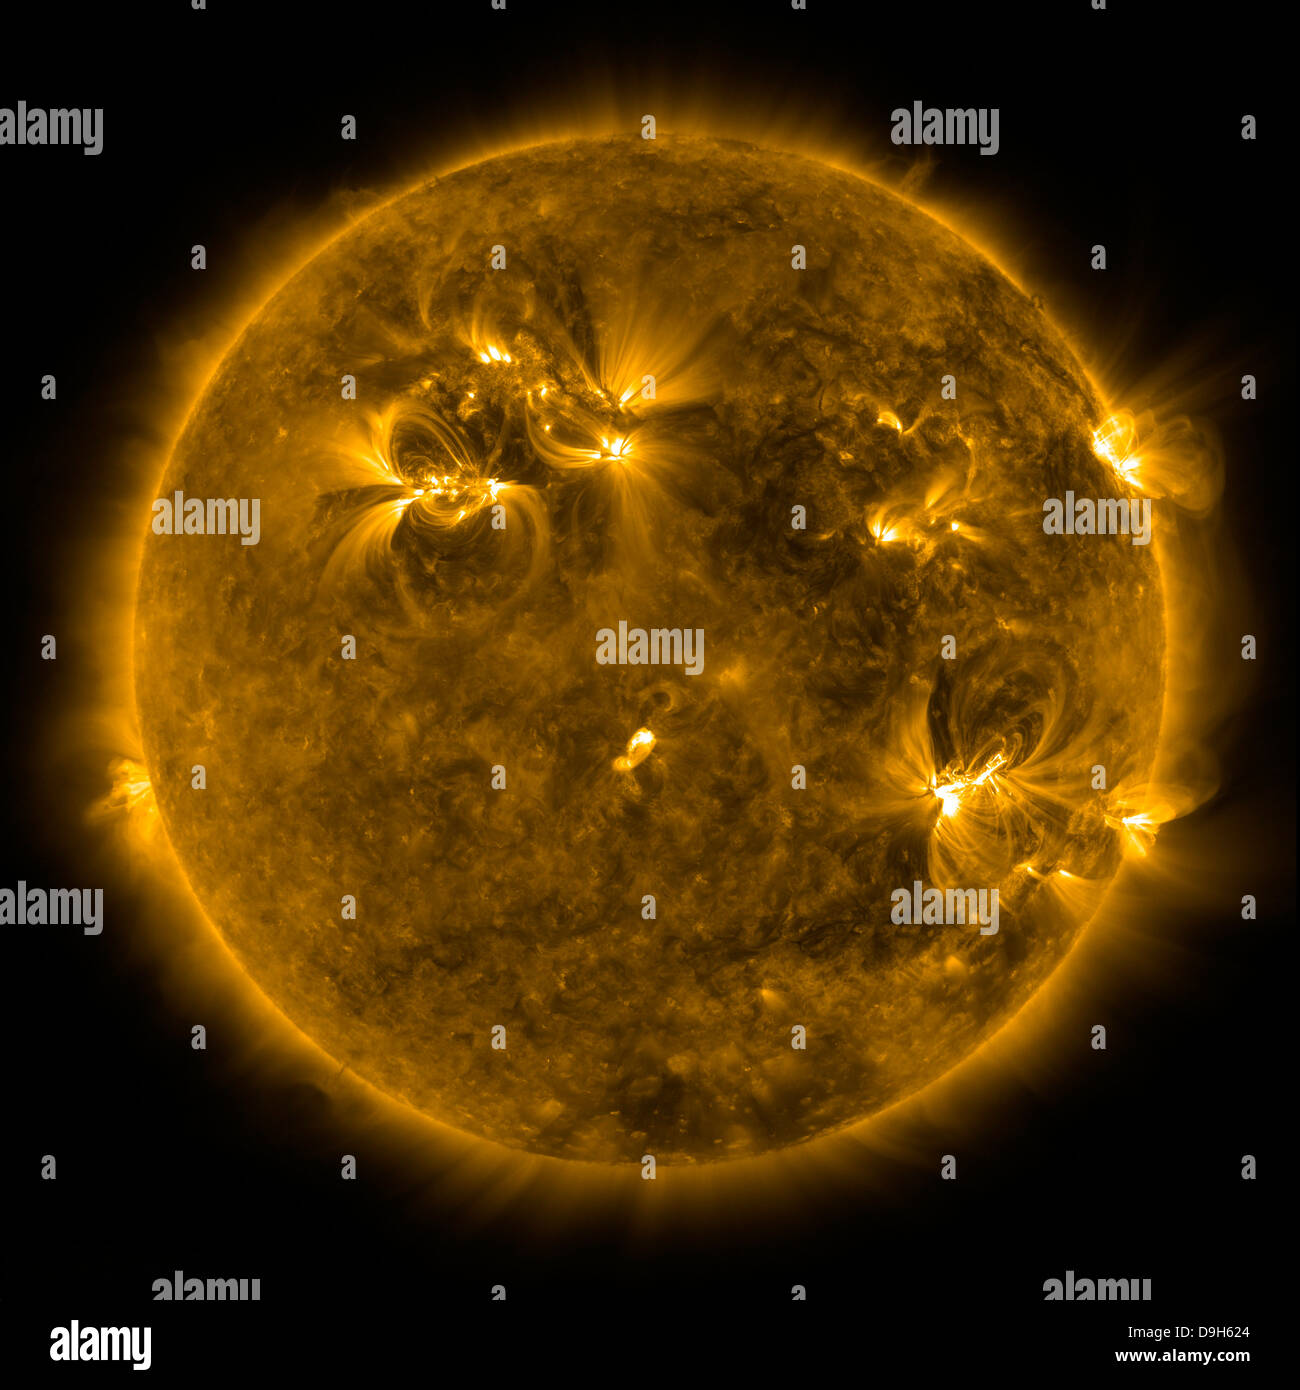 Febbraio 17, 2011 - Attività solare sul sole. Questa immagine mostra la corona di tranquilla e la parte superiore della zona di transizione del sole. Foto Stock